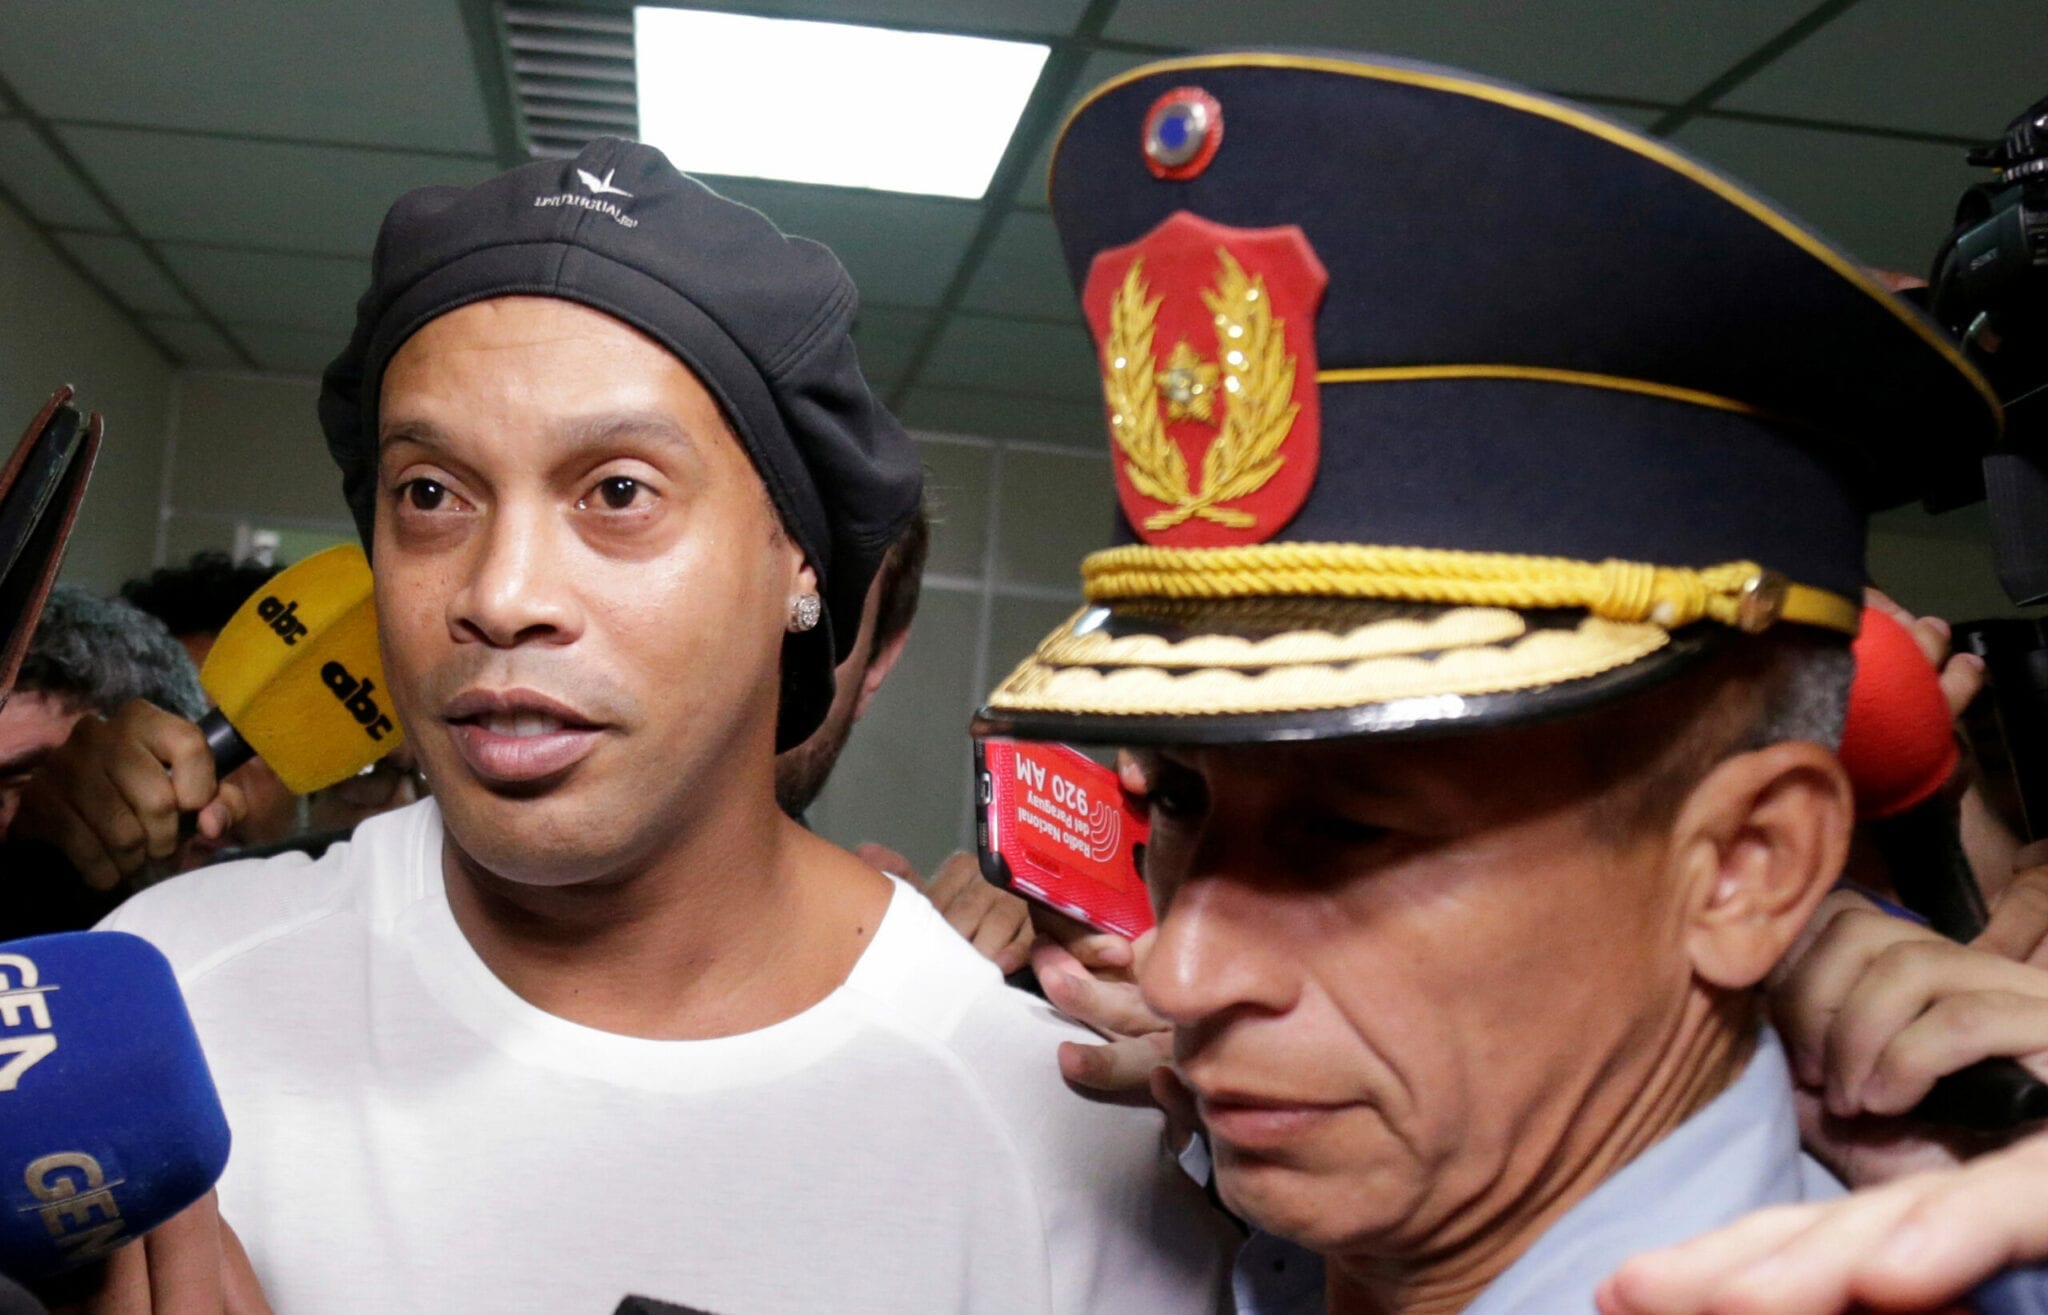 Toujours incarcere Ronaldinho suspecte d etre mele a une affaire de blanchiment d argent scaled - Ronaldinho fête ses 40 ans derrière les barreaux, ses compagnons de cellule lui font une belle surprise